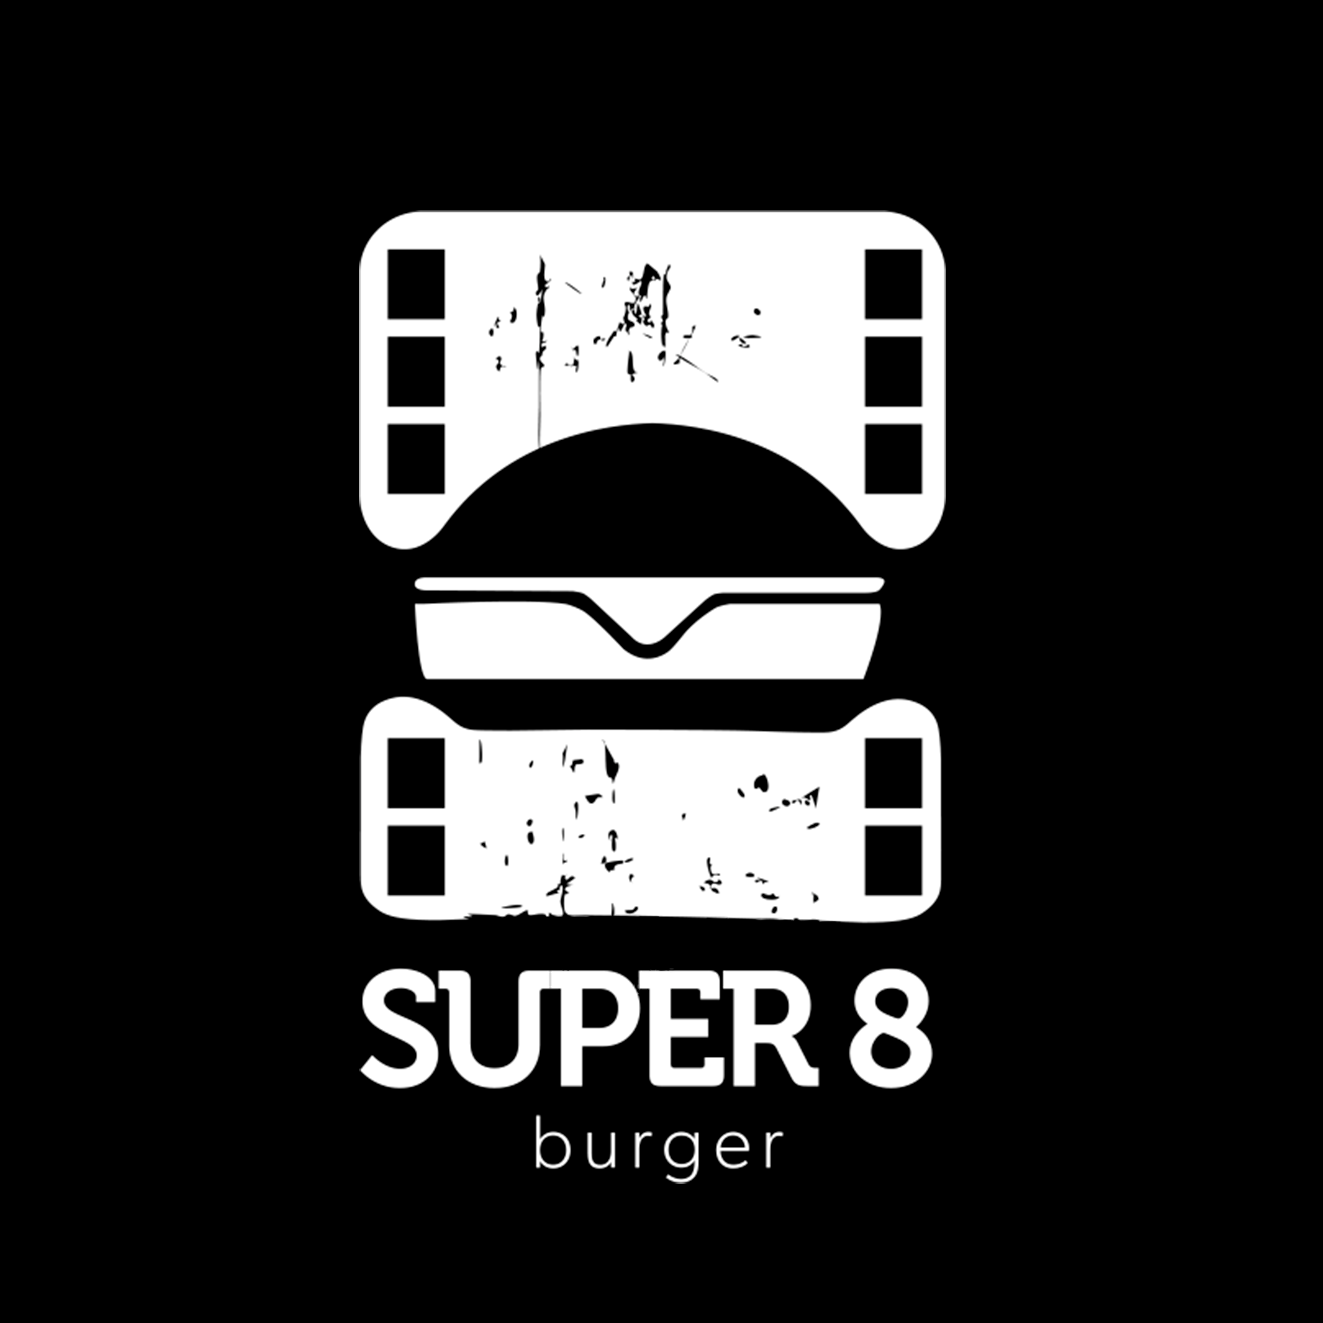 Super 8 Burger